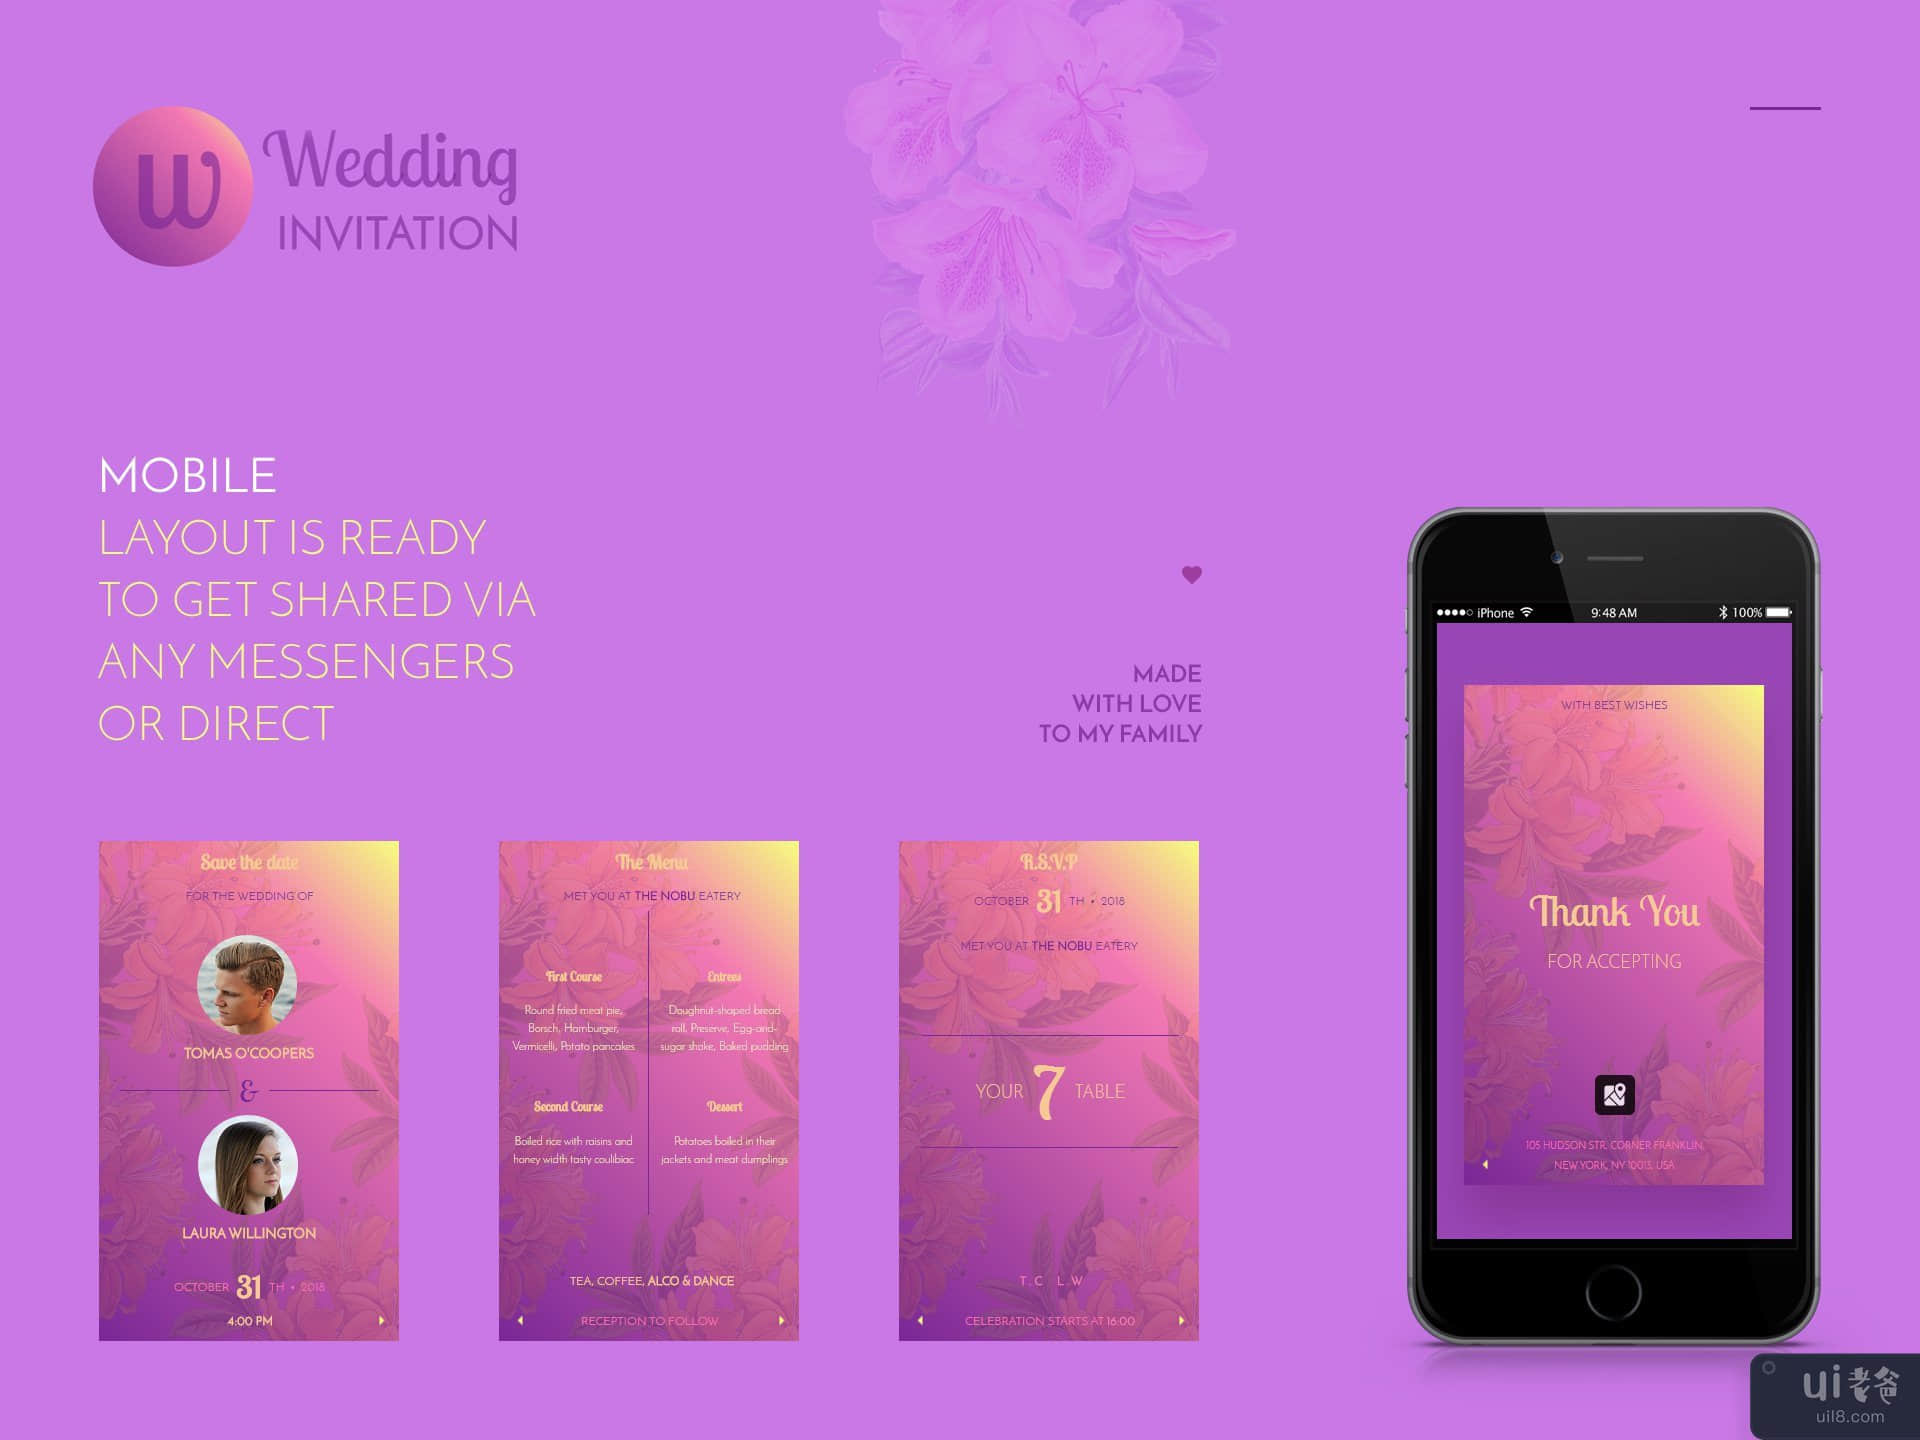 婚礼的浏览器邀请(Browser invitation for wedding)插图3